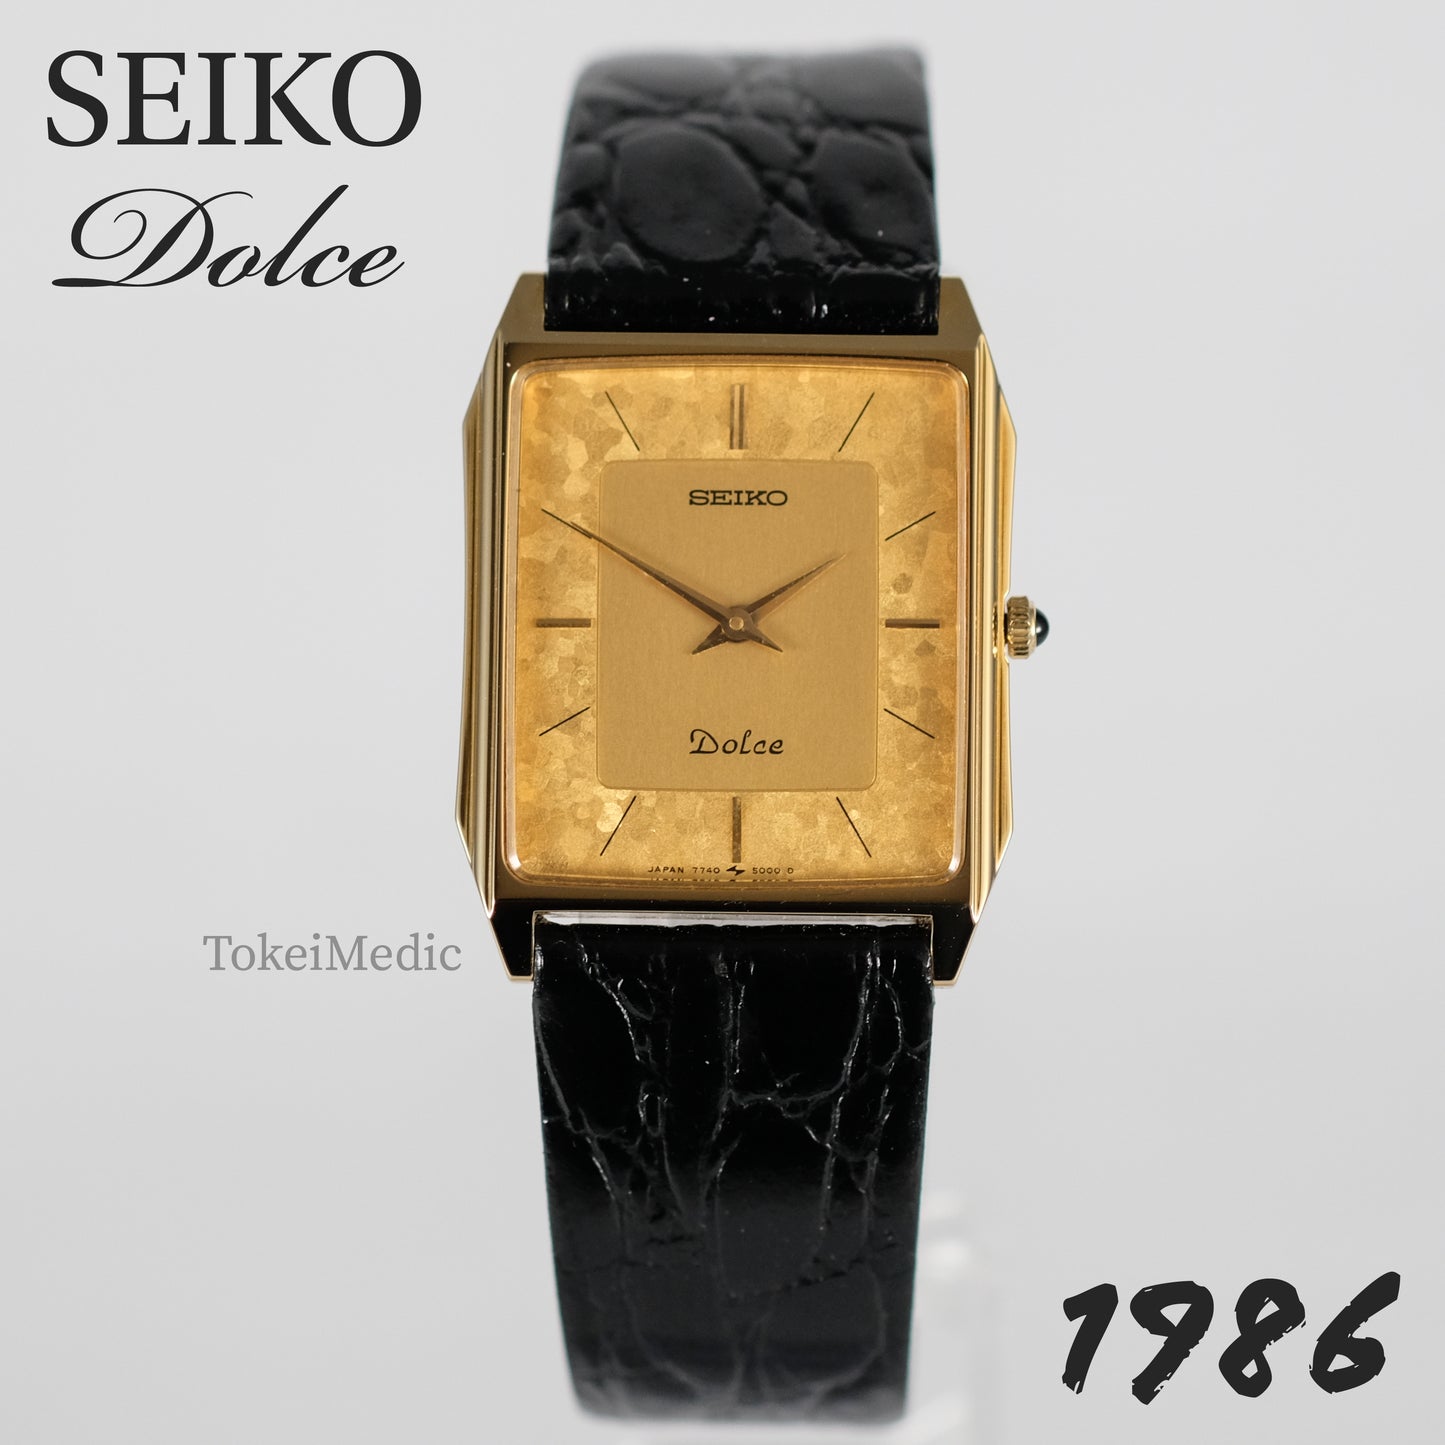 1986 Seiko Dolce 7740-5000